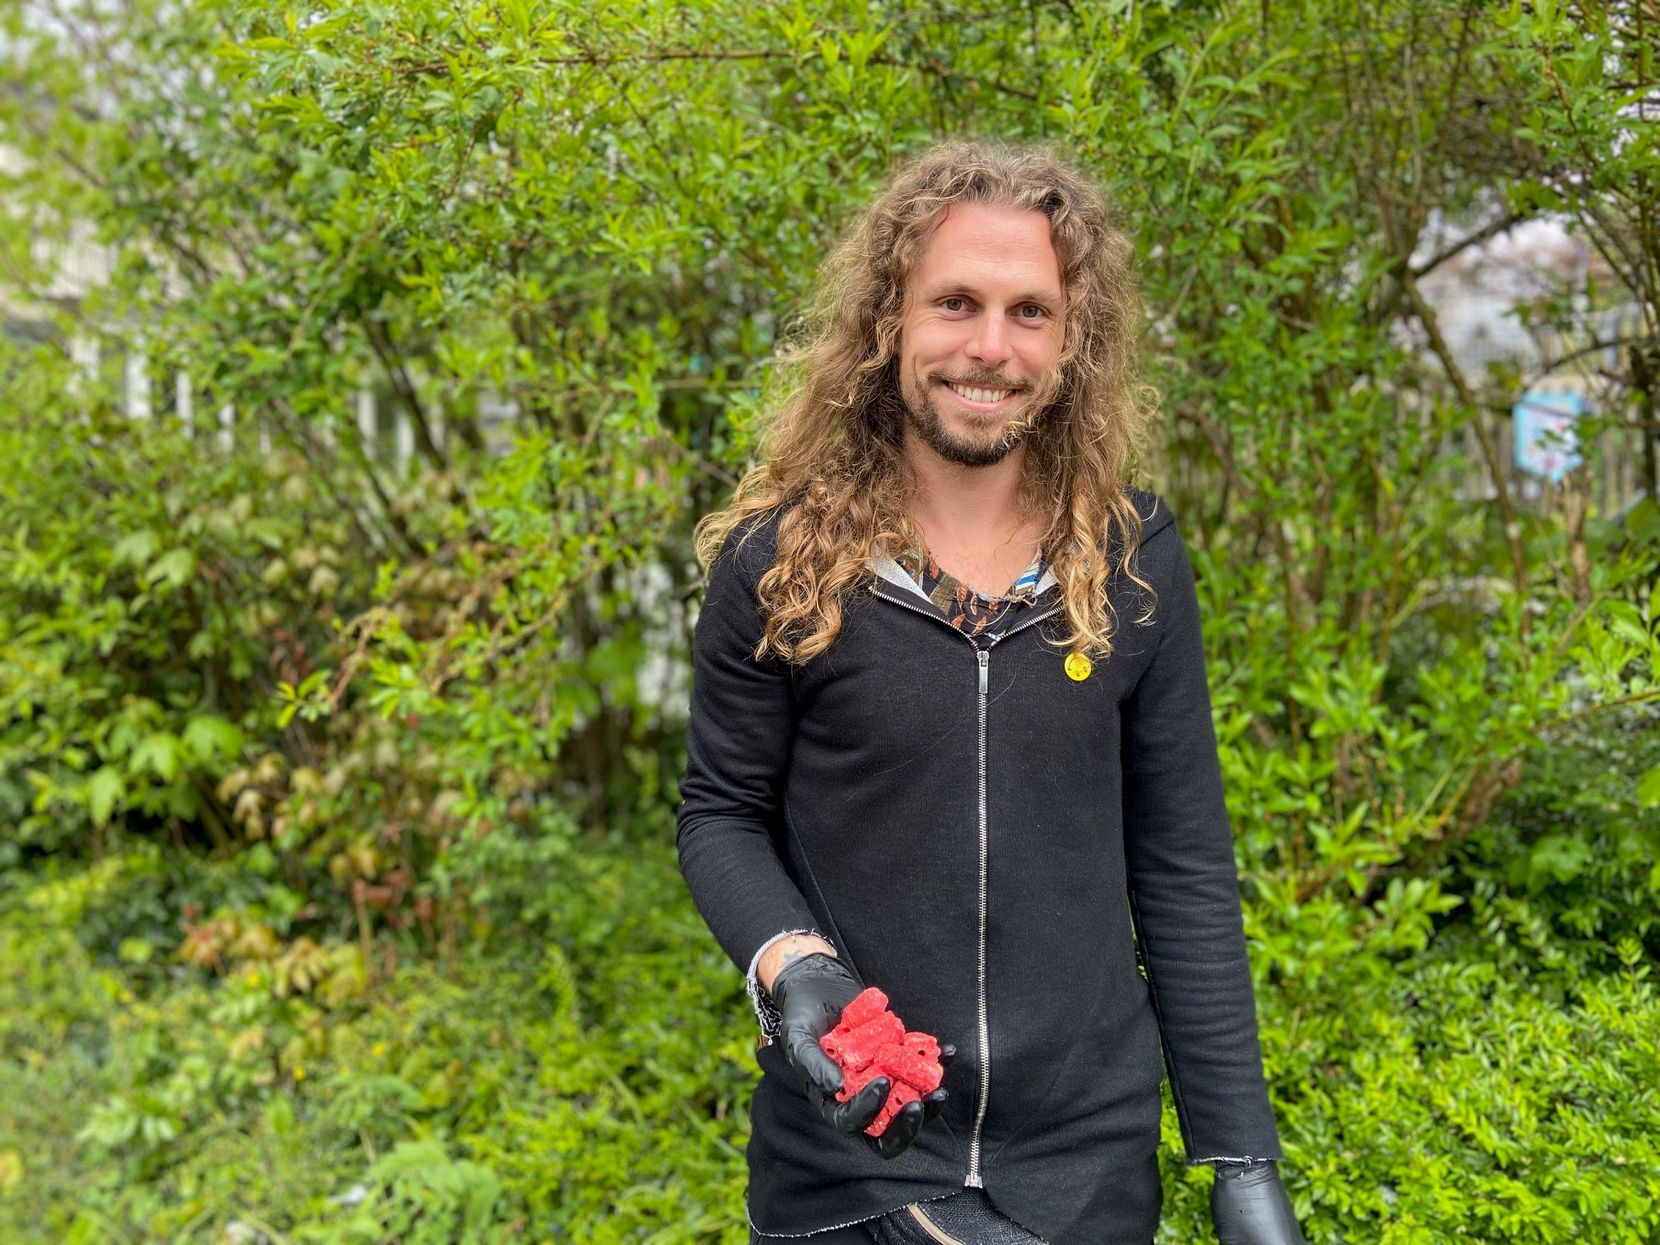 Remo Ronner mit roten Wachsködern in der Hand, er steht vor einem Garten.